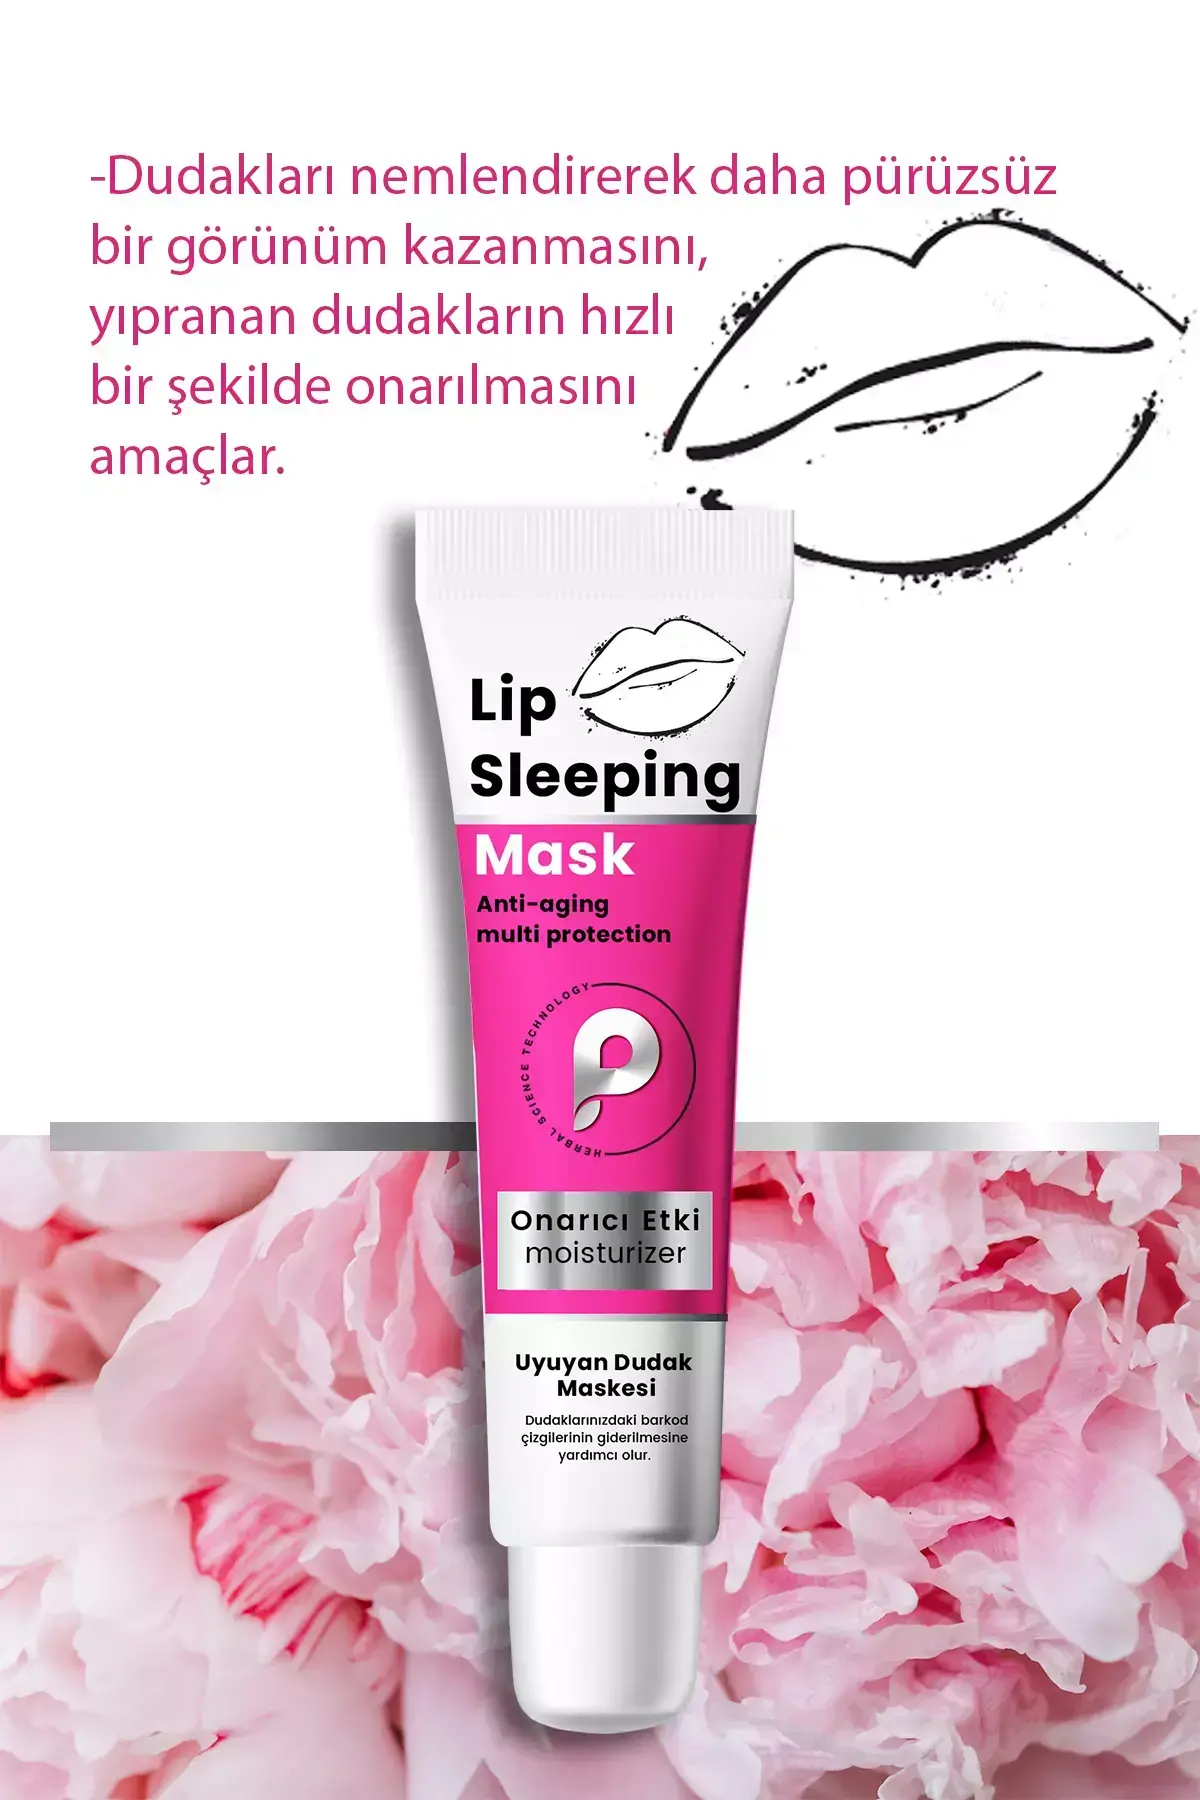 PROCSIN Nemlendirici ve Onarıcı Dudak Maskesi Lip Sleeping Mask 15 ML - 5